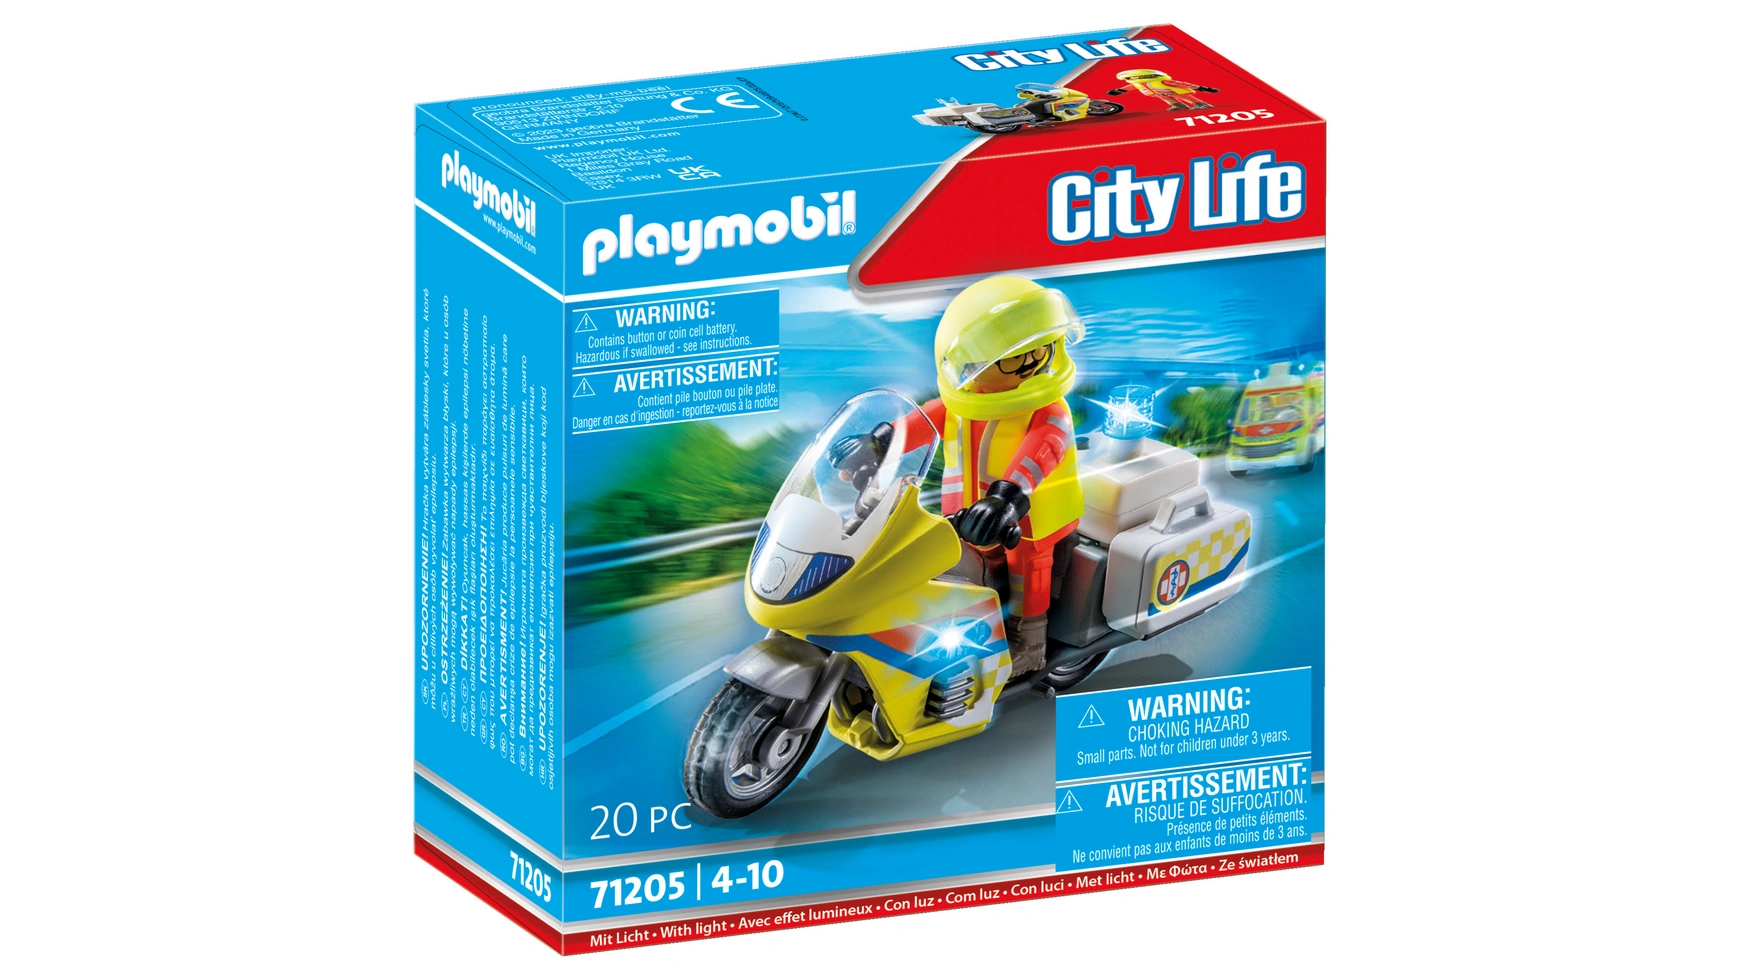 врач скорой помощи бучков р City life мотоцикл врача скорой помощи с мигалкой Playmobil